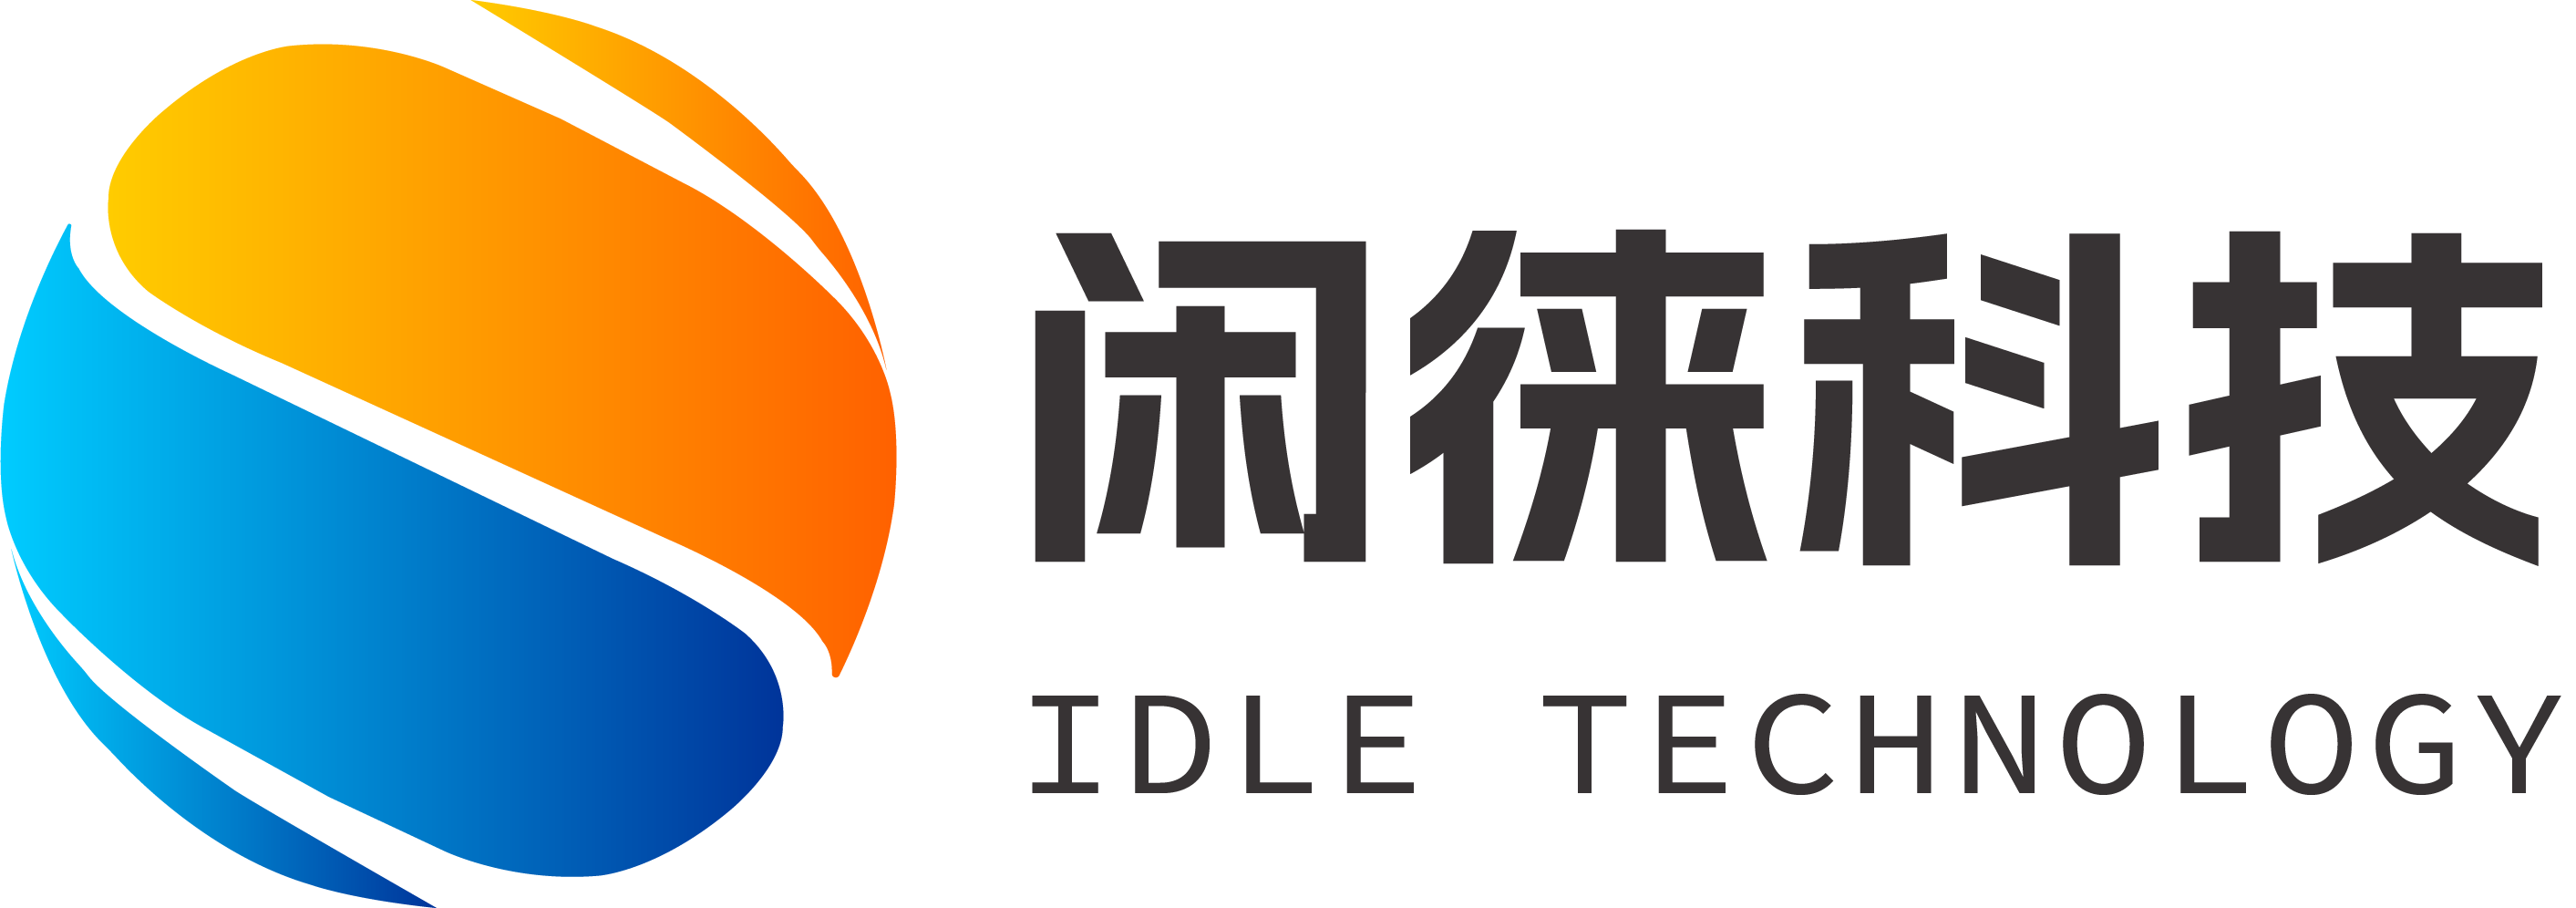 闲徕logo